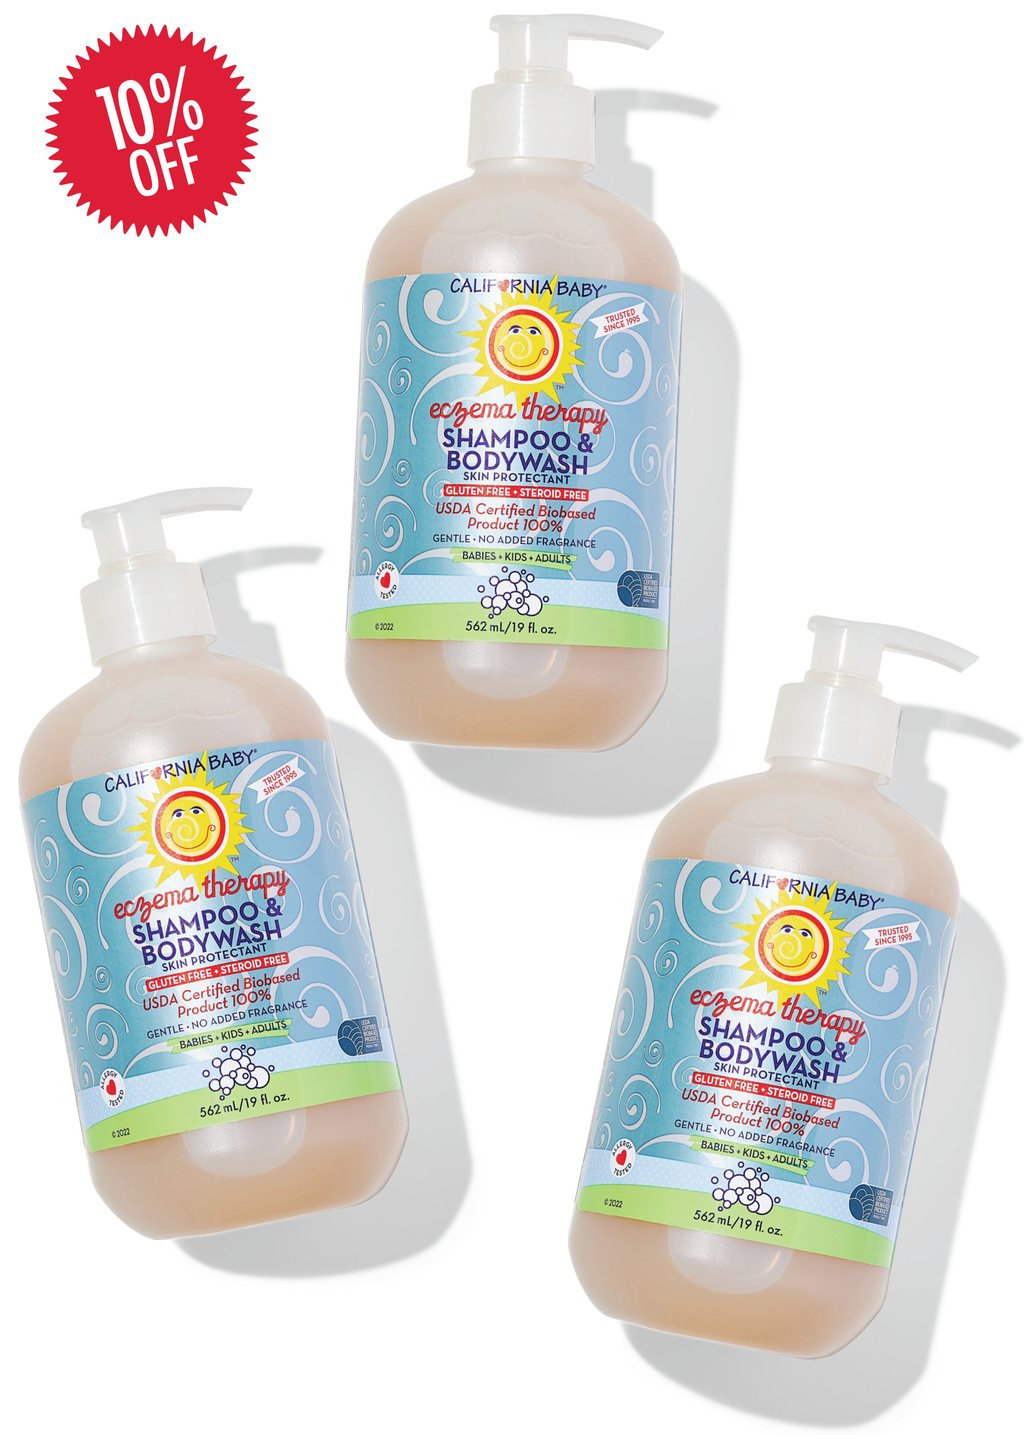 Therapeutic Relief™ Eczema & Bodywash Shampoo